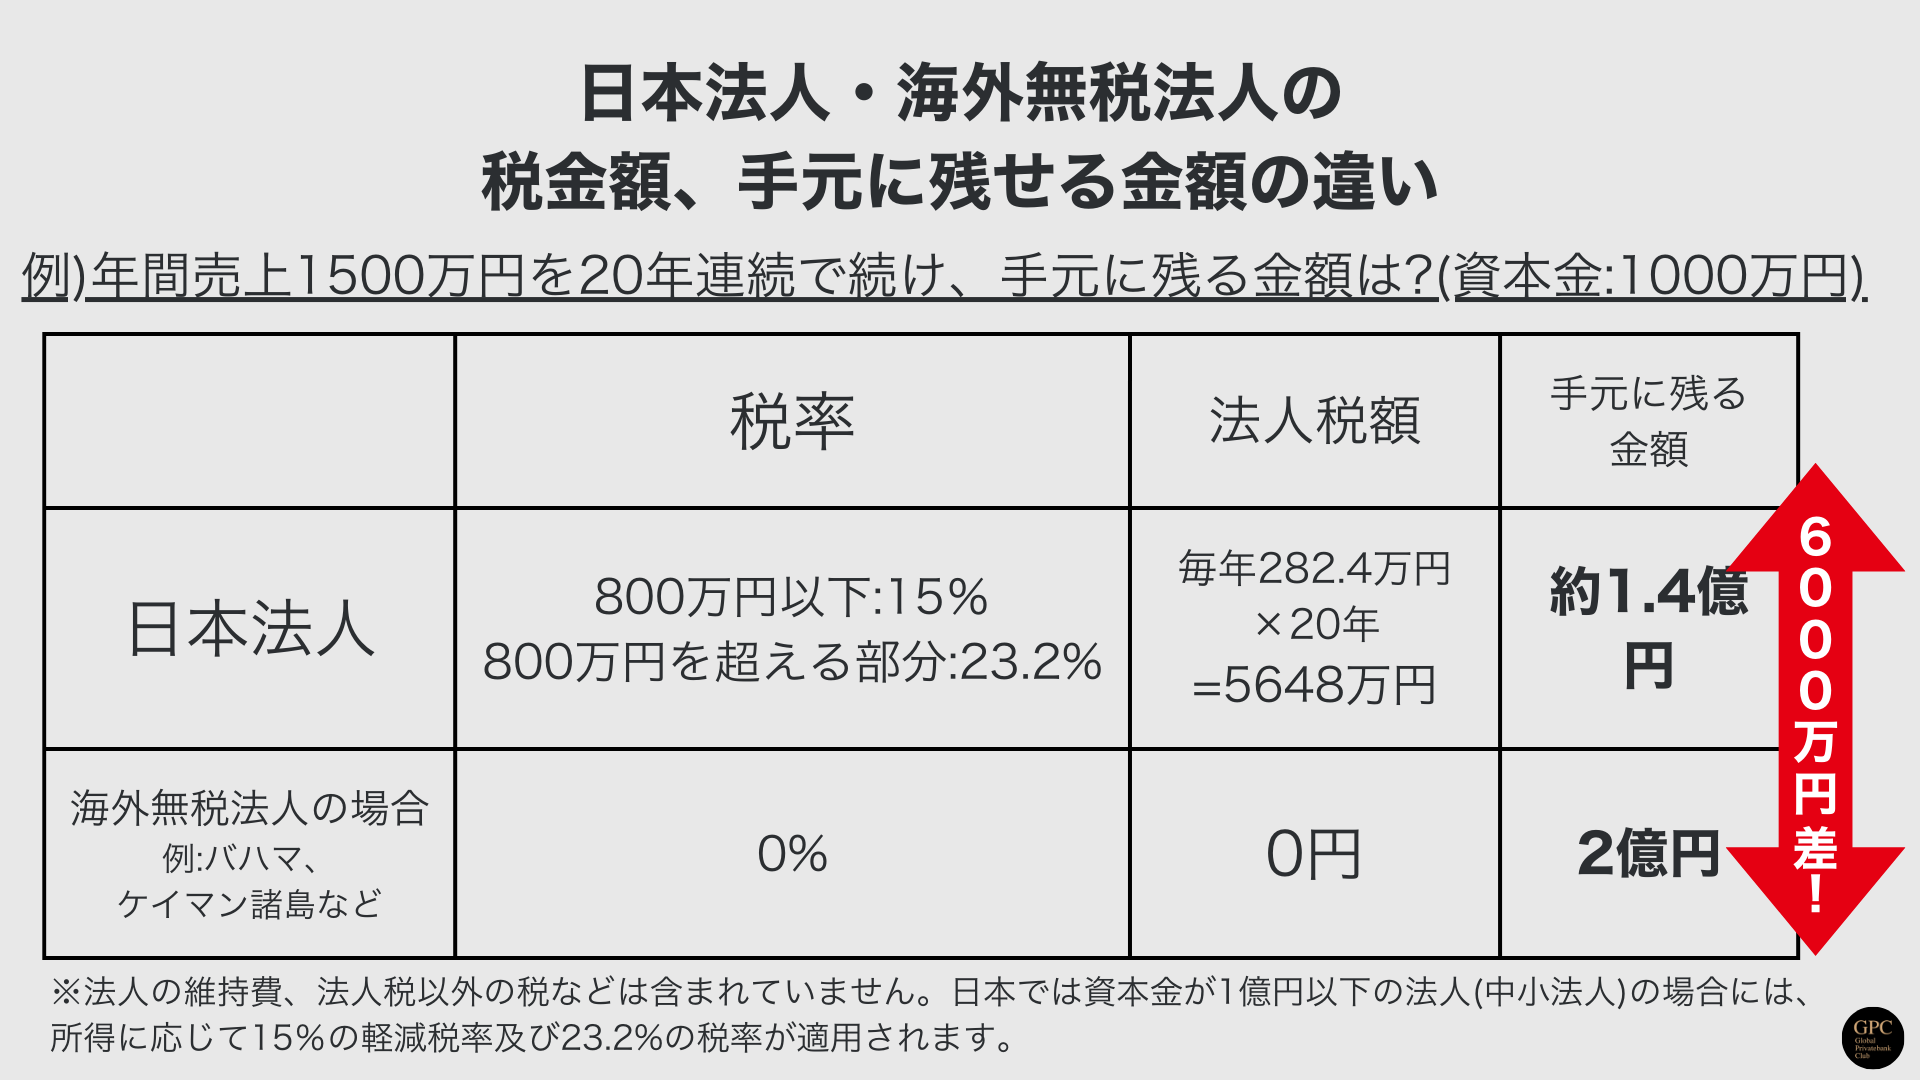 日本法人・海外法人の税額の違い